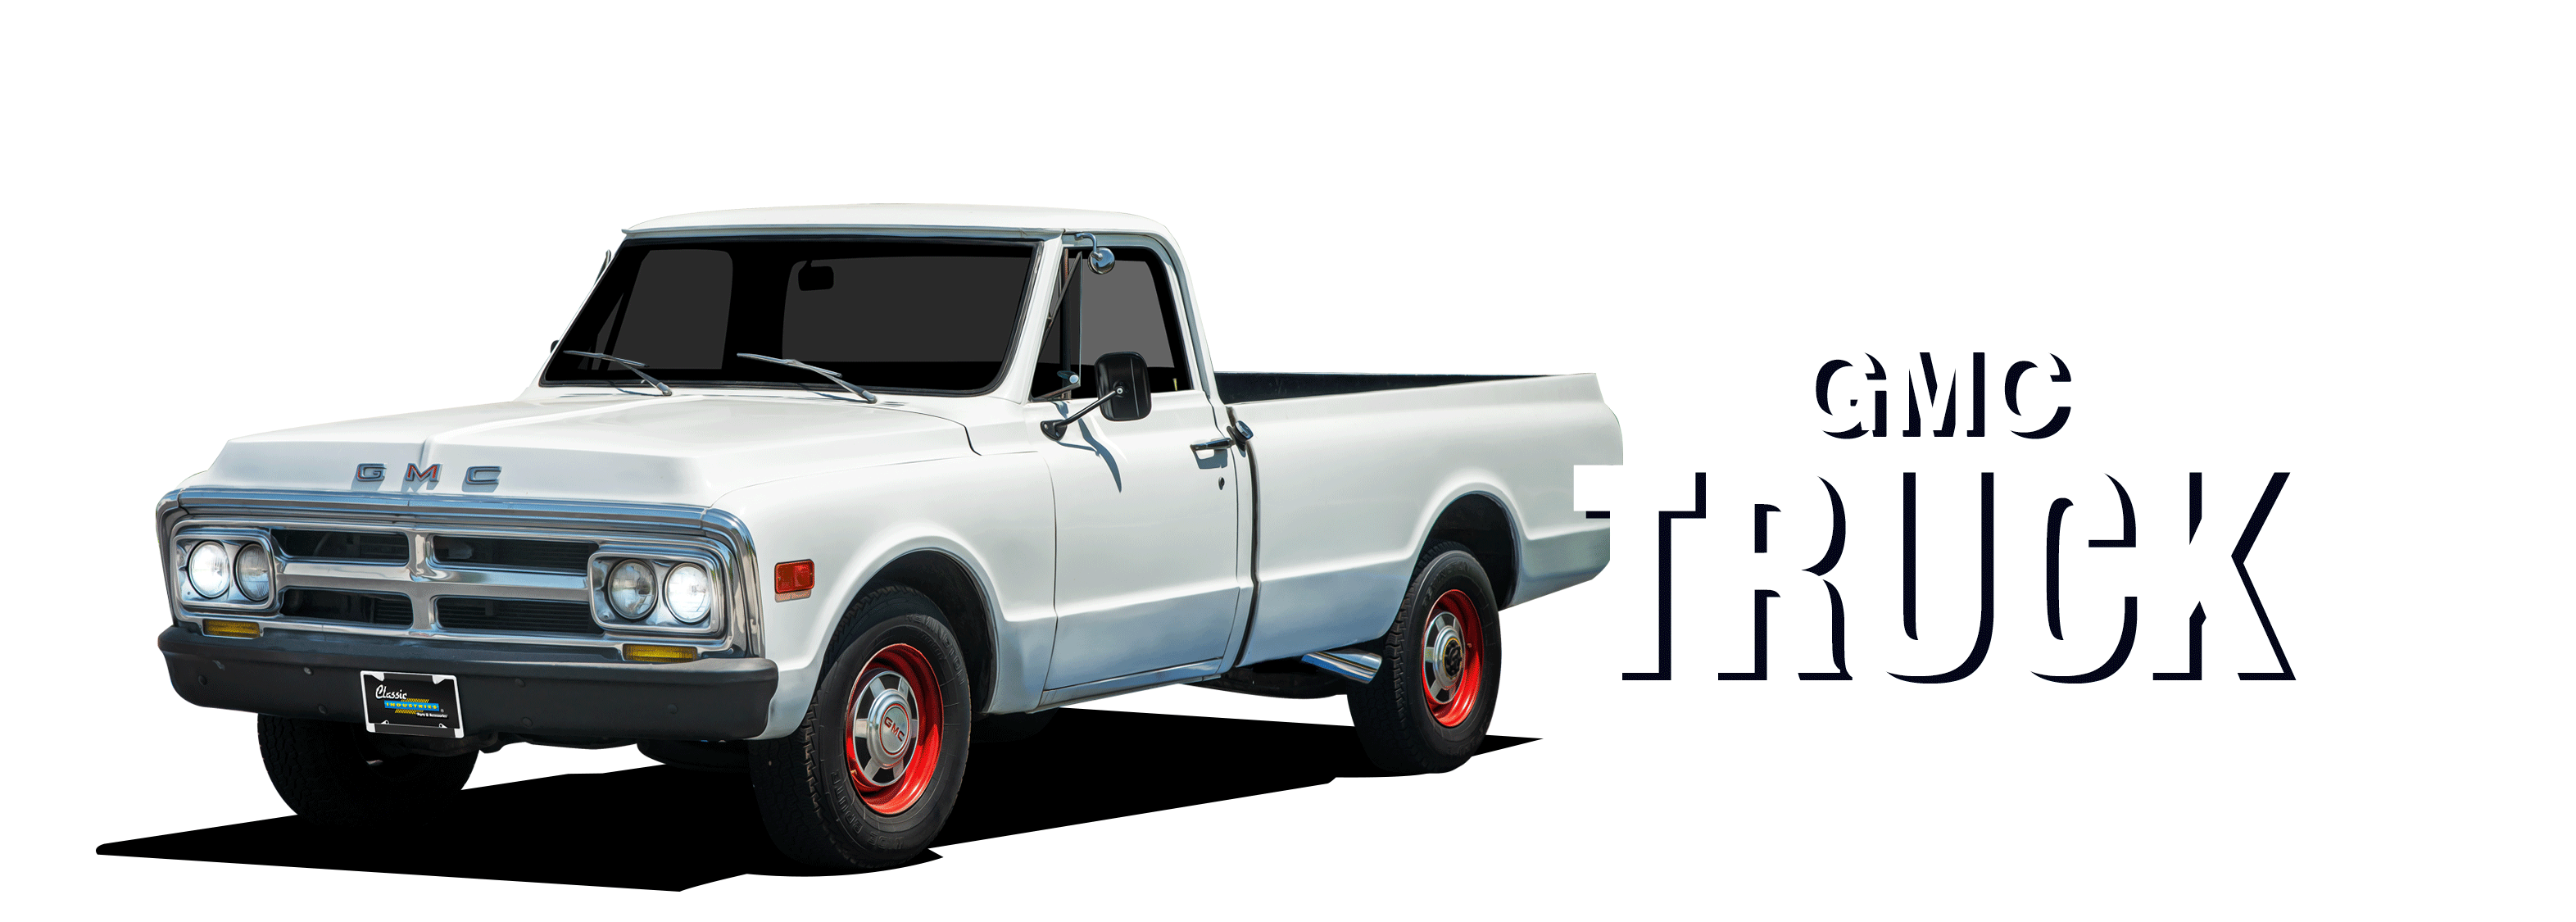 GMC-Truck-vehicle-desktop